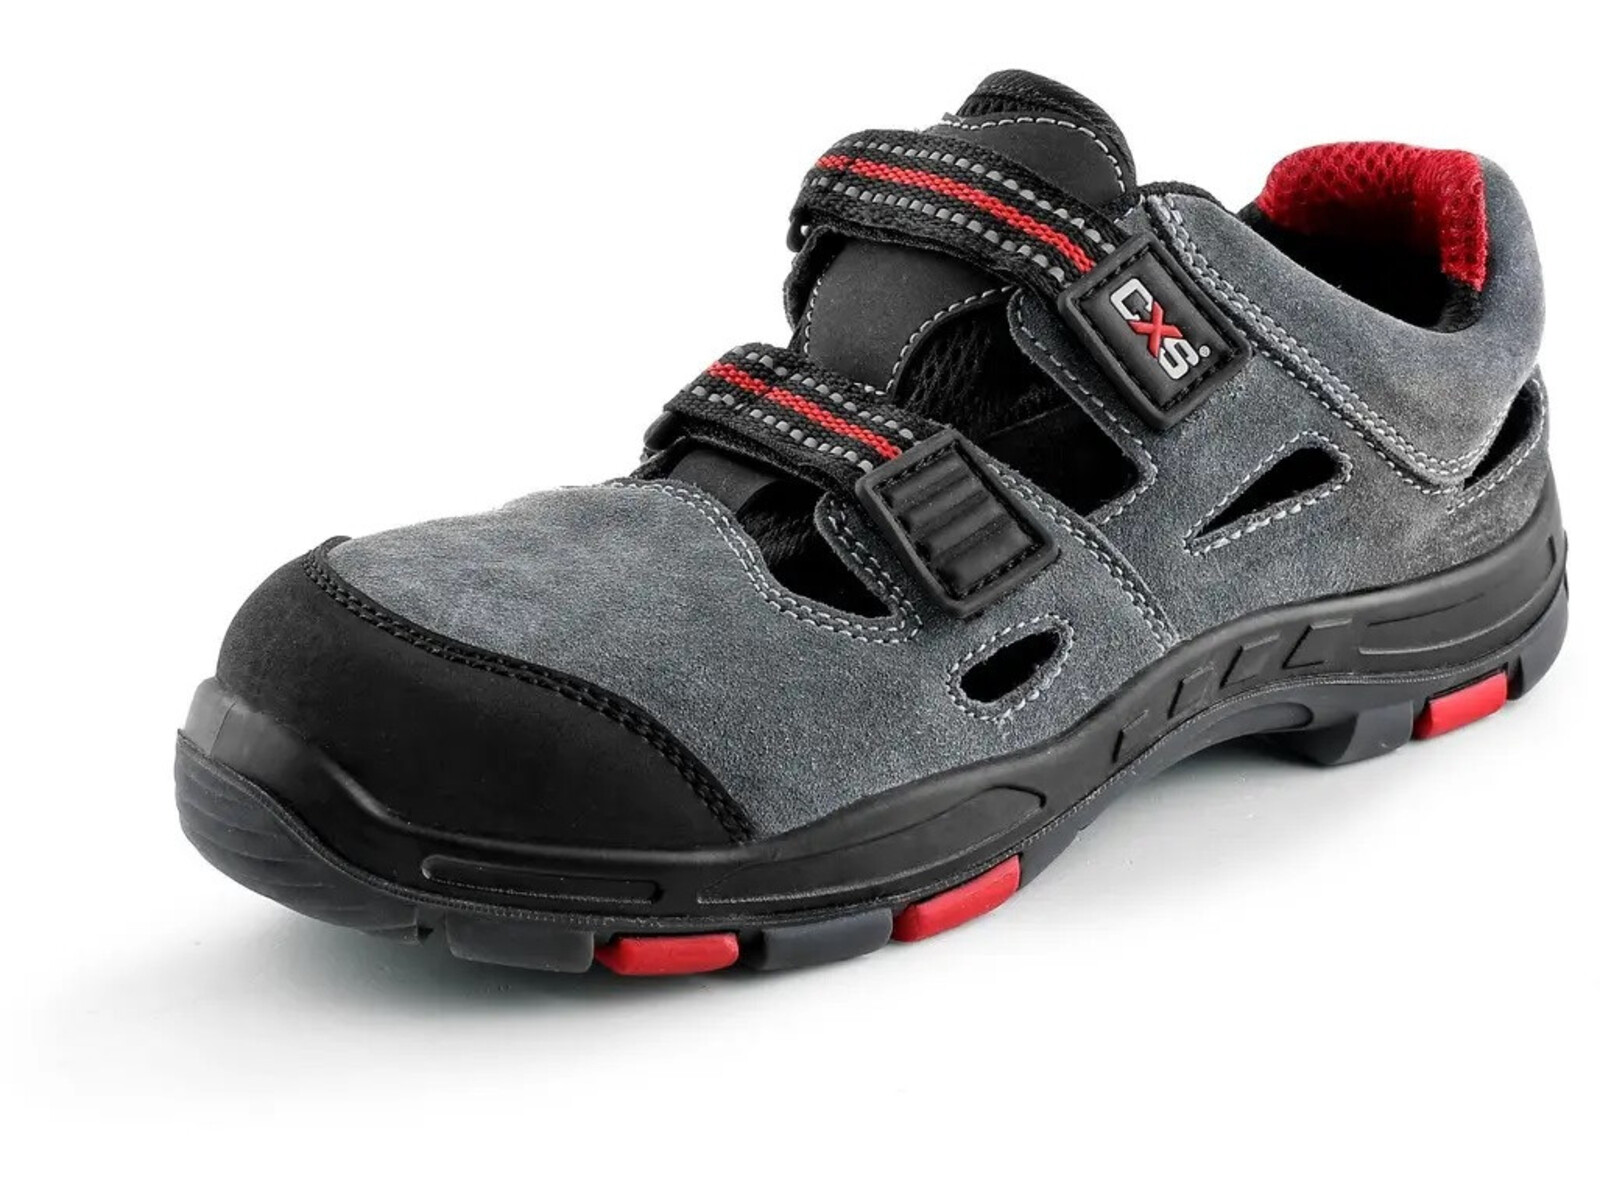 Pracovné sandále CXS Rock Phyllite O1 FO HRO SRA MF - veľkosť: 48, farba: sivá/červená